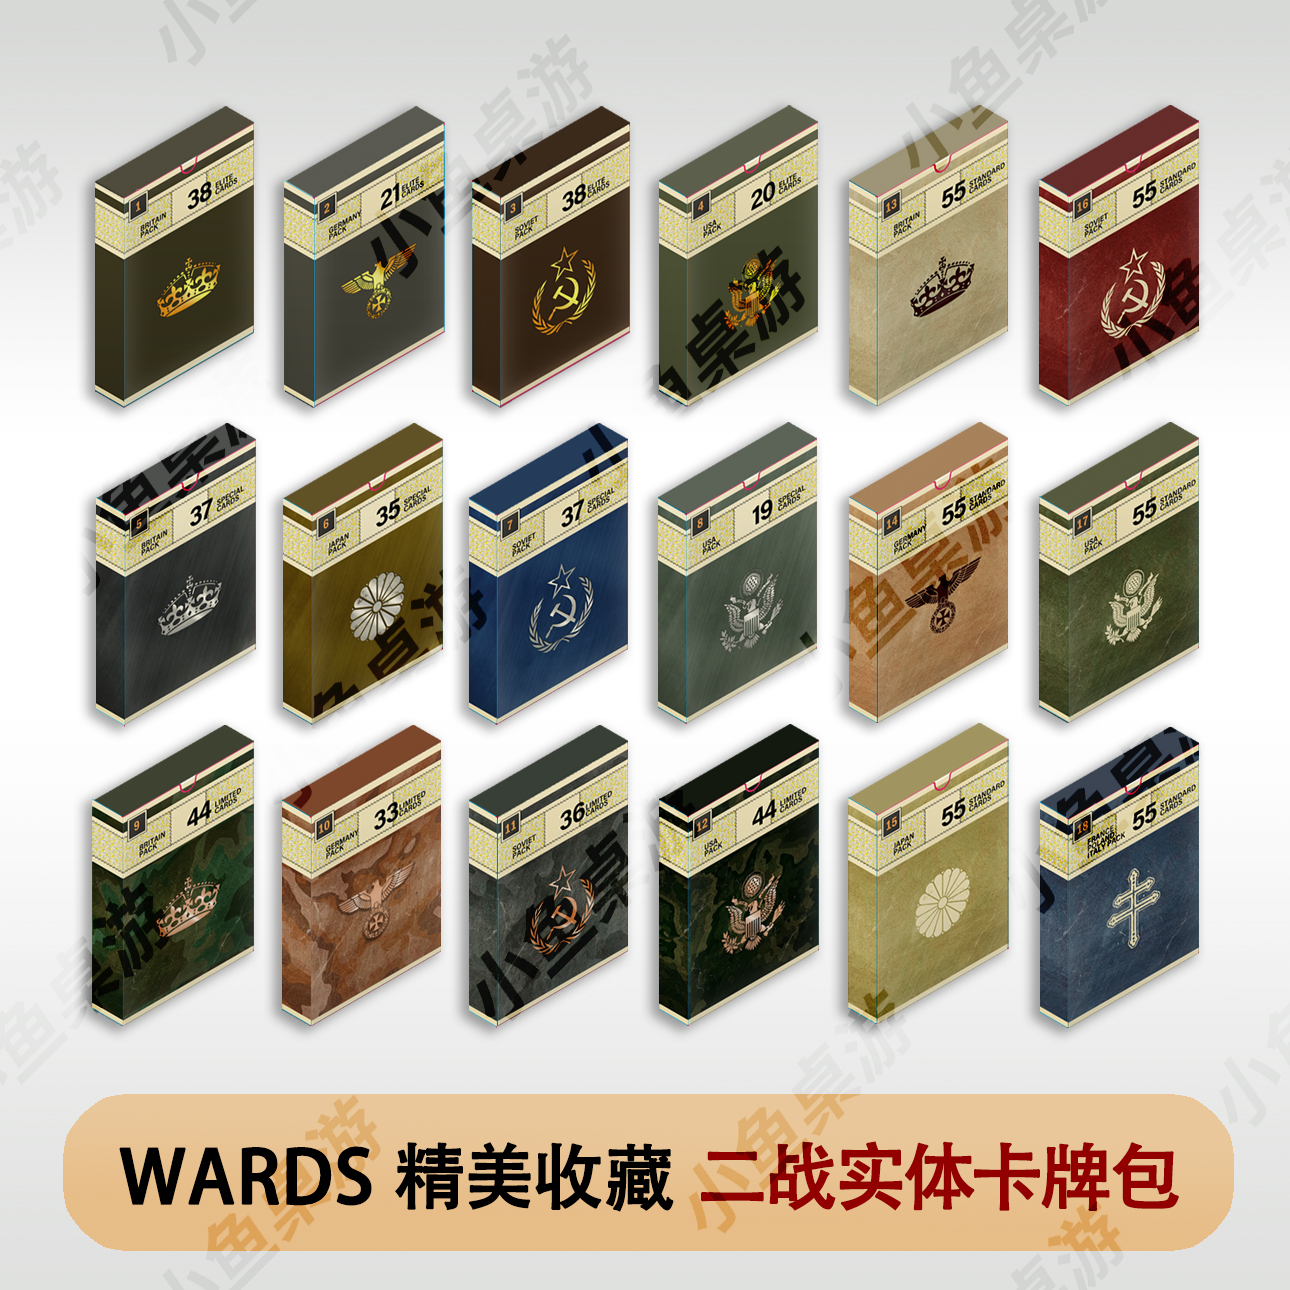 小鱼桌游Wards二战卡牌桌游实体盲盒卡包零售收藏对战潮玩Kards